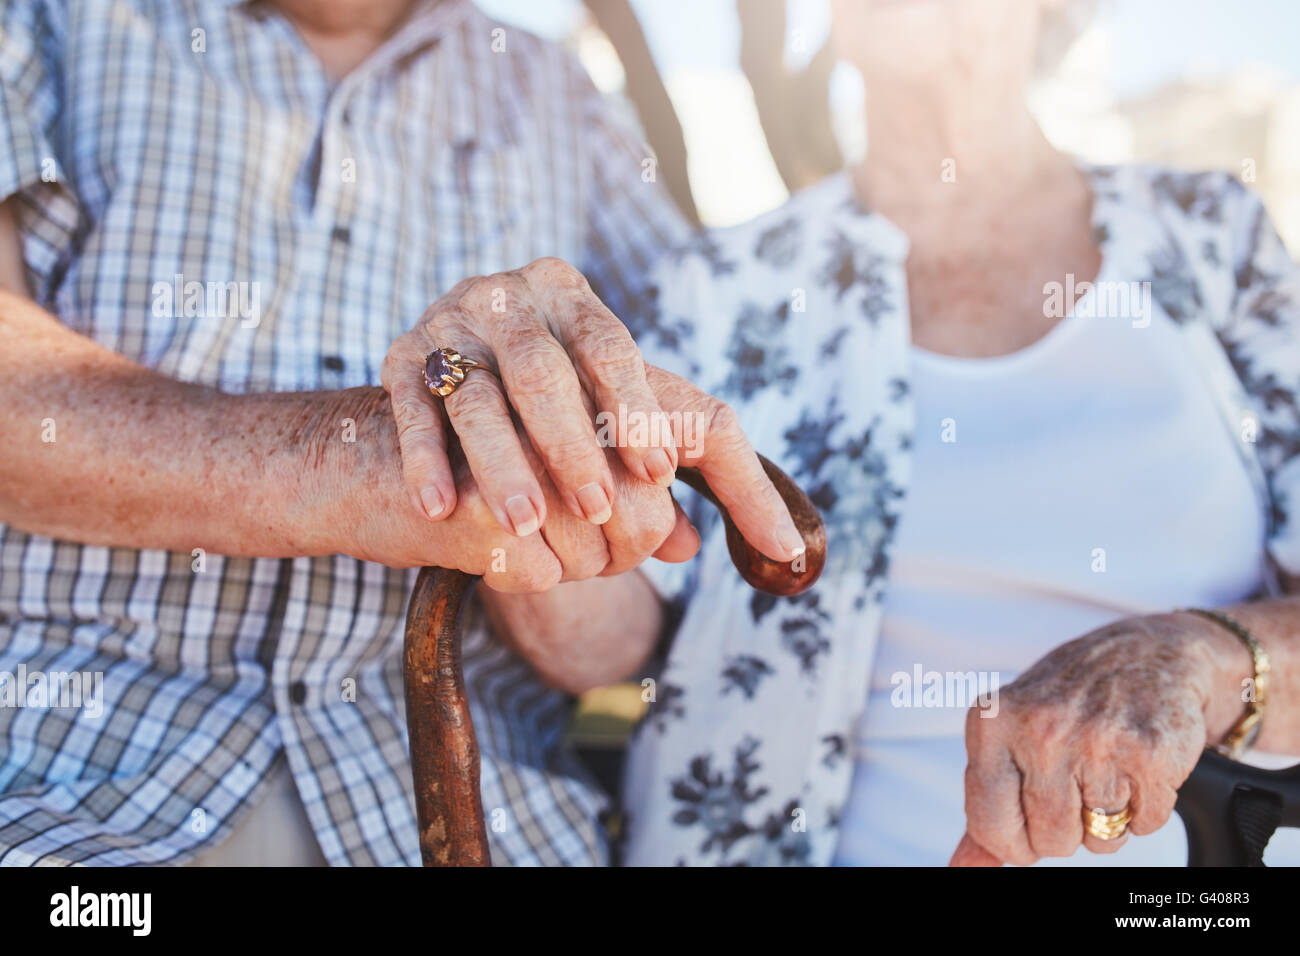 Ritagliato colpo di coppia senior holding hands seduti insieme. Focus su mani sul bastone. Foto Stock